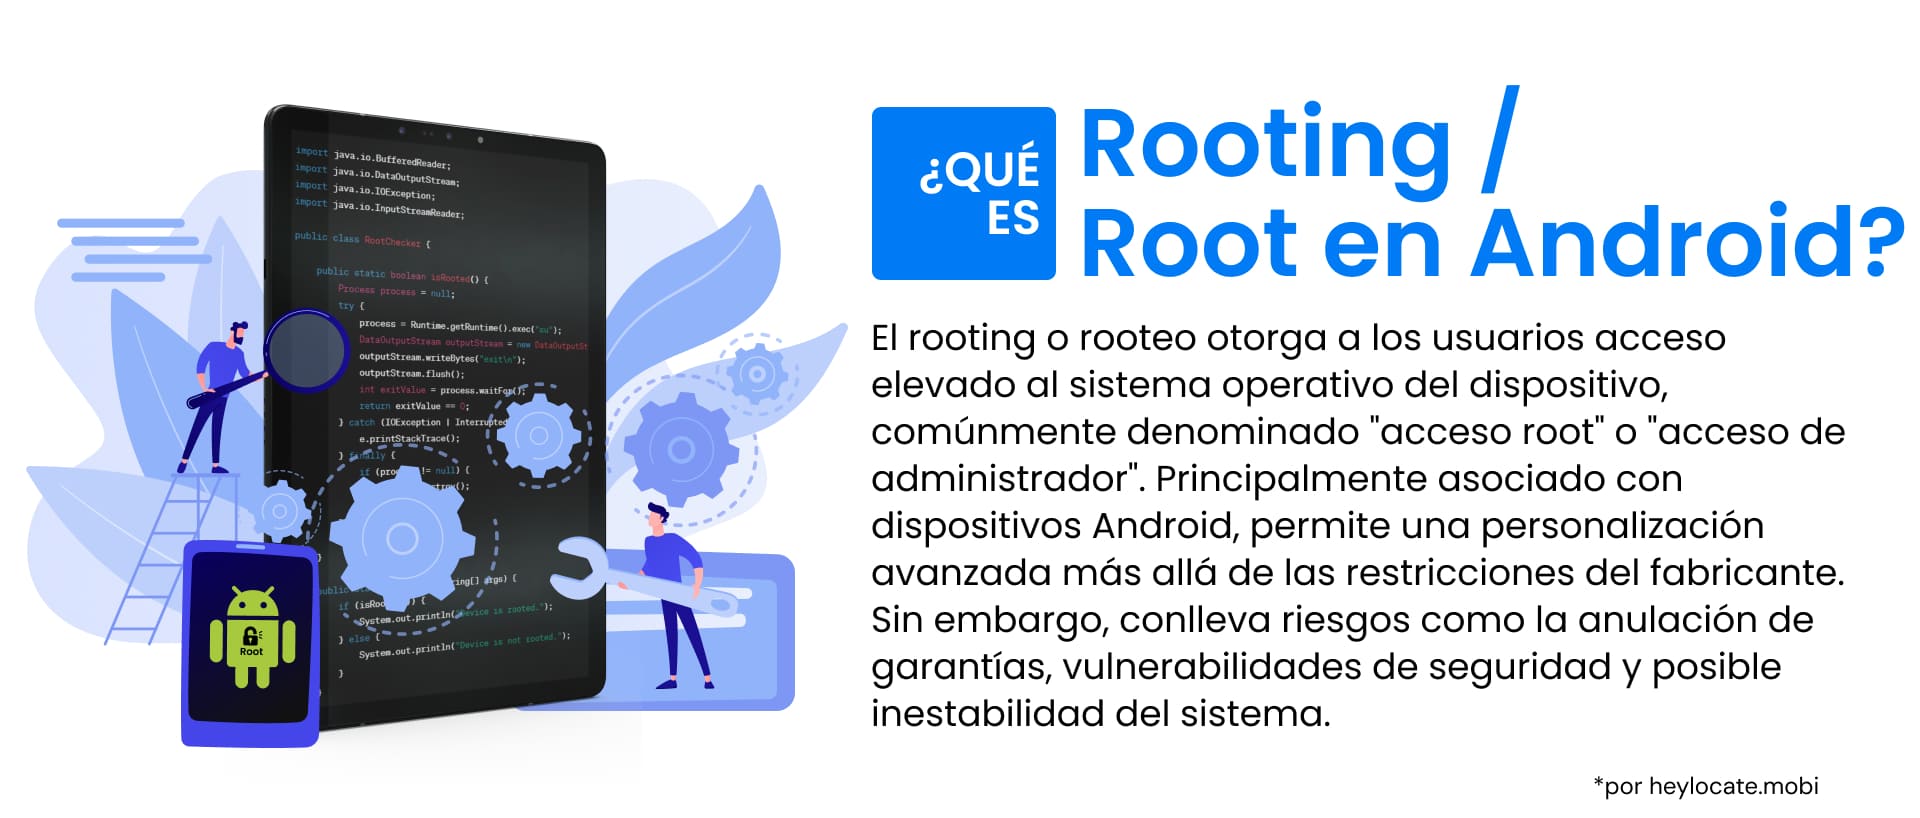 La infografía sirve de guía sobre el concepto de "rooting" en dispositivos Android, que consiste en obtener un control privilegiado conocido como "acceso root" sobre el dispositivo, lo que permite una amplia personalización más allá de los límites establecidos por el fabricante.